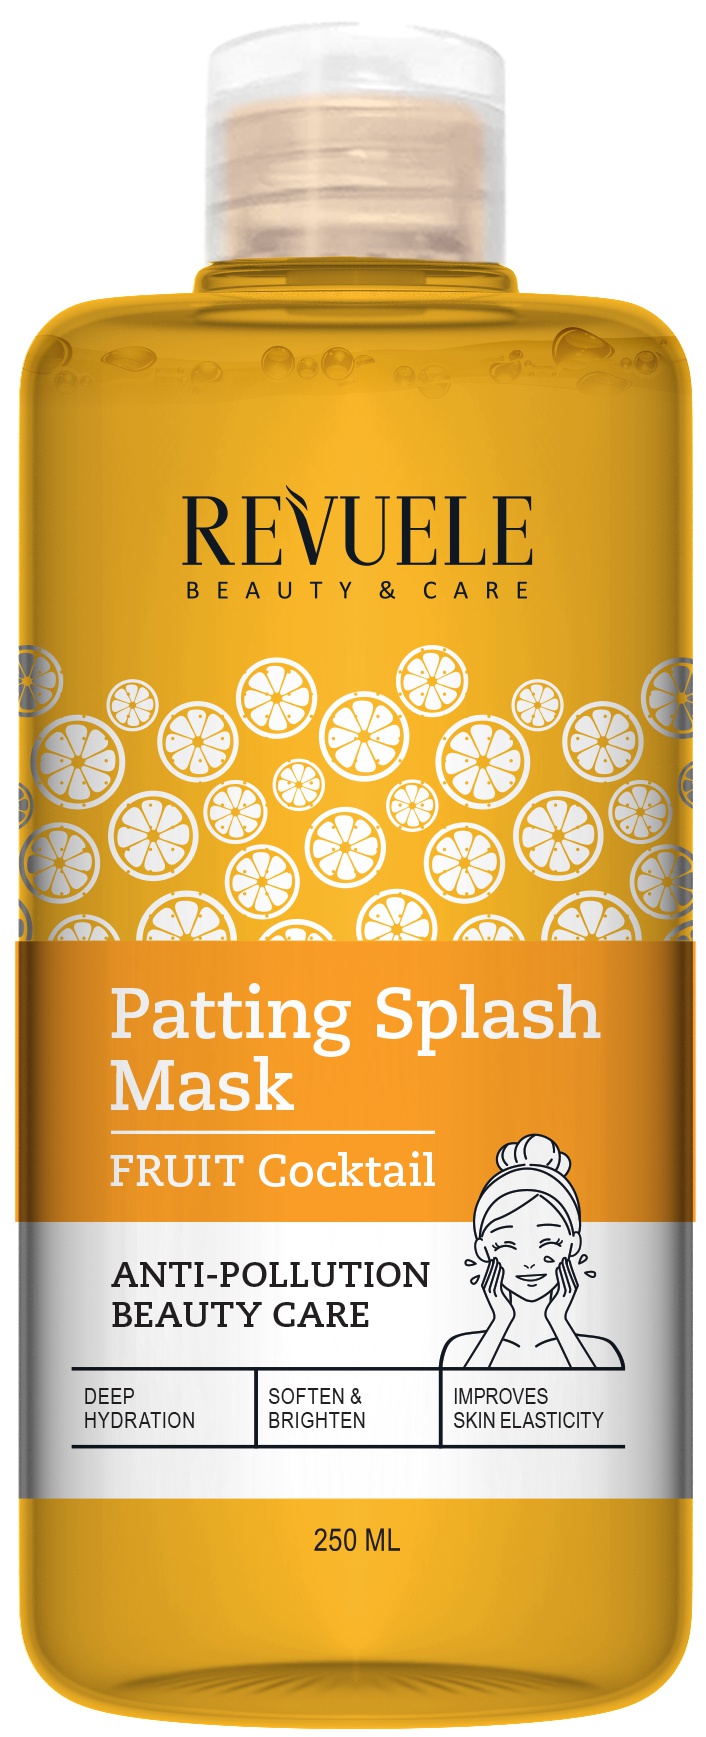 Revuele Patting Splash Mask Fruit Coctail